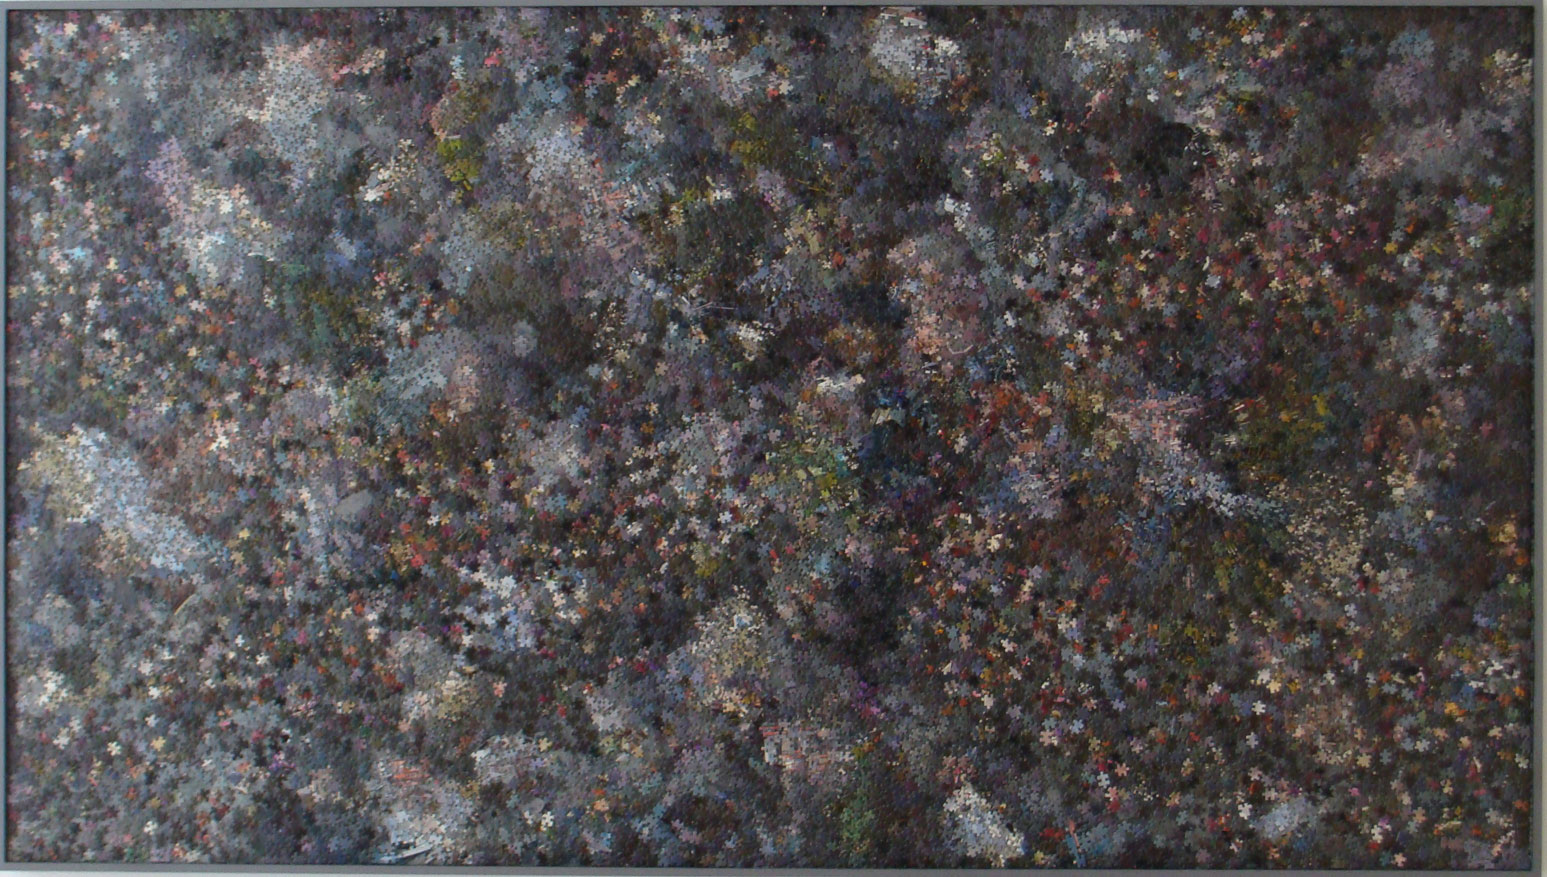 peintures et puzzle sur bois 150x270, 2011 coll. prive.